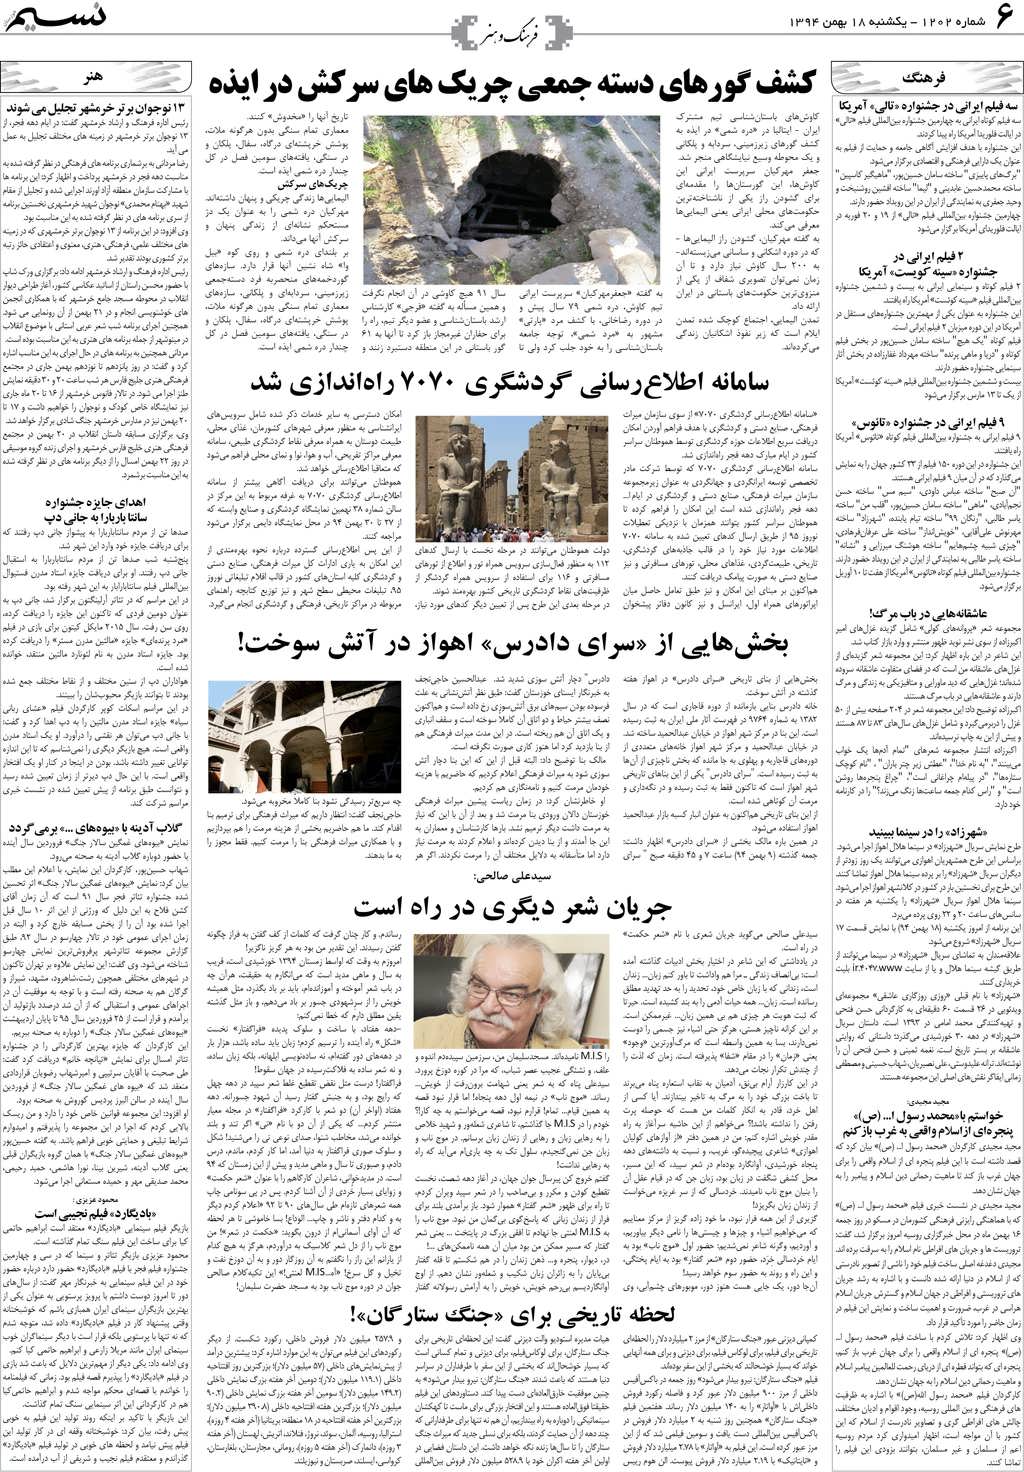 صفحه فرهنگ و هنر روزنامه نسیم شماره 1202